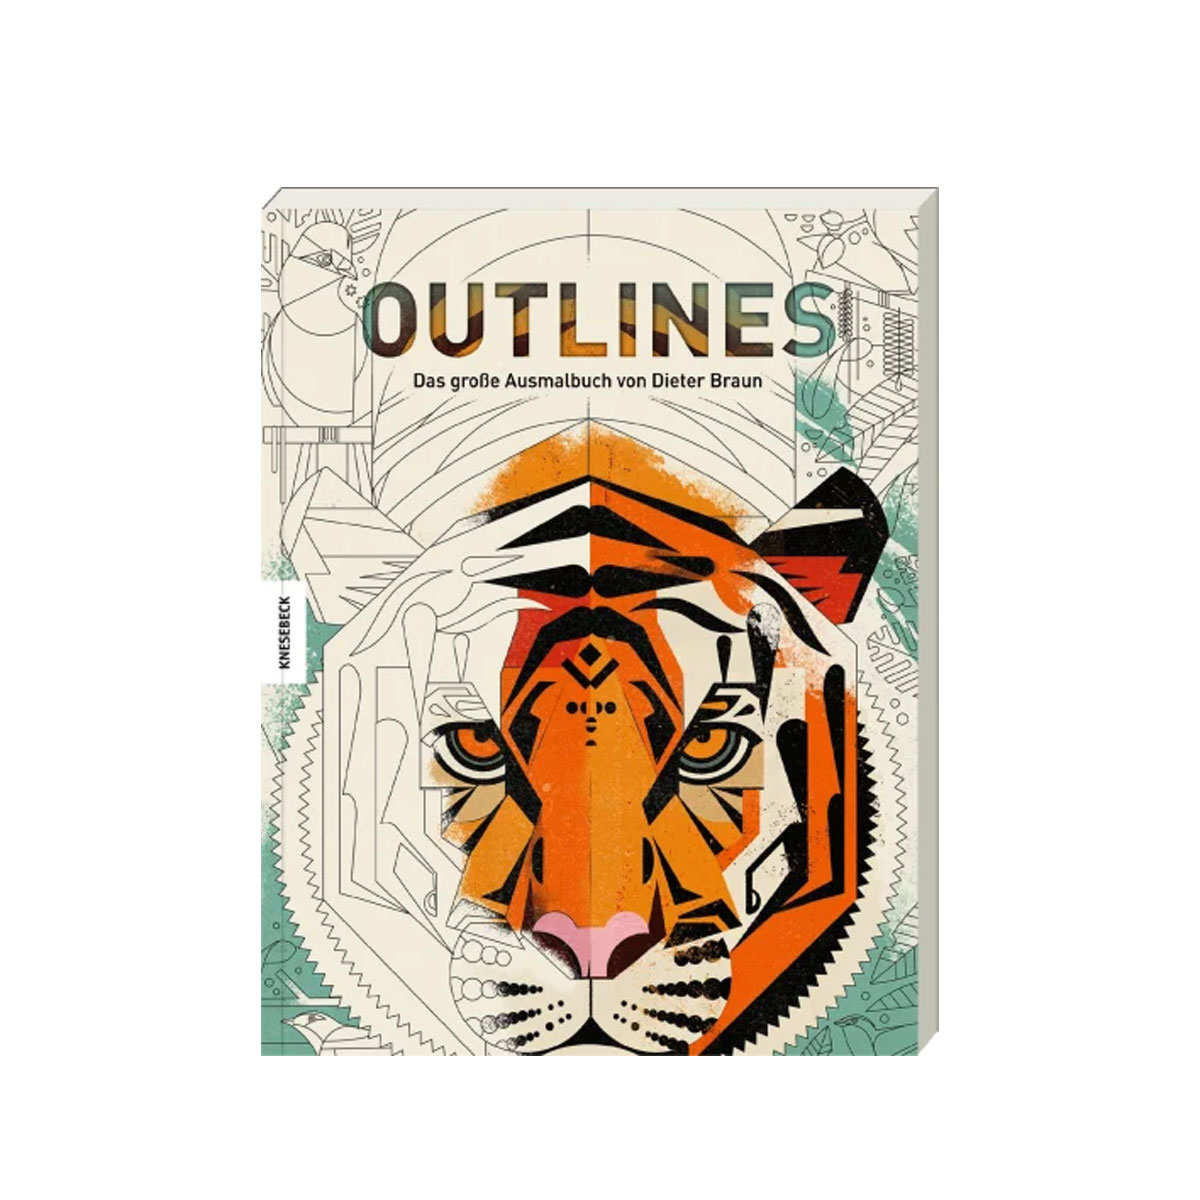 Outlines - Das große Ausmalbuch von Dieter Braun für Kinder und Erwachsene aus dem Knesebeck Verlag